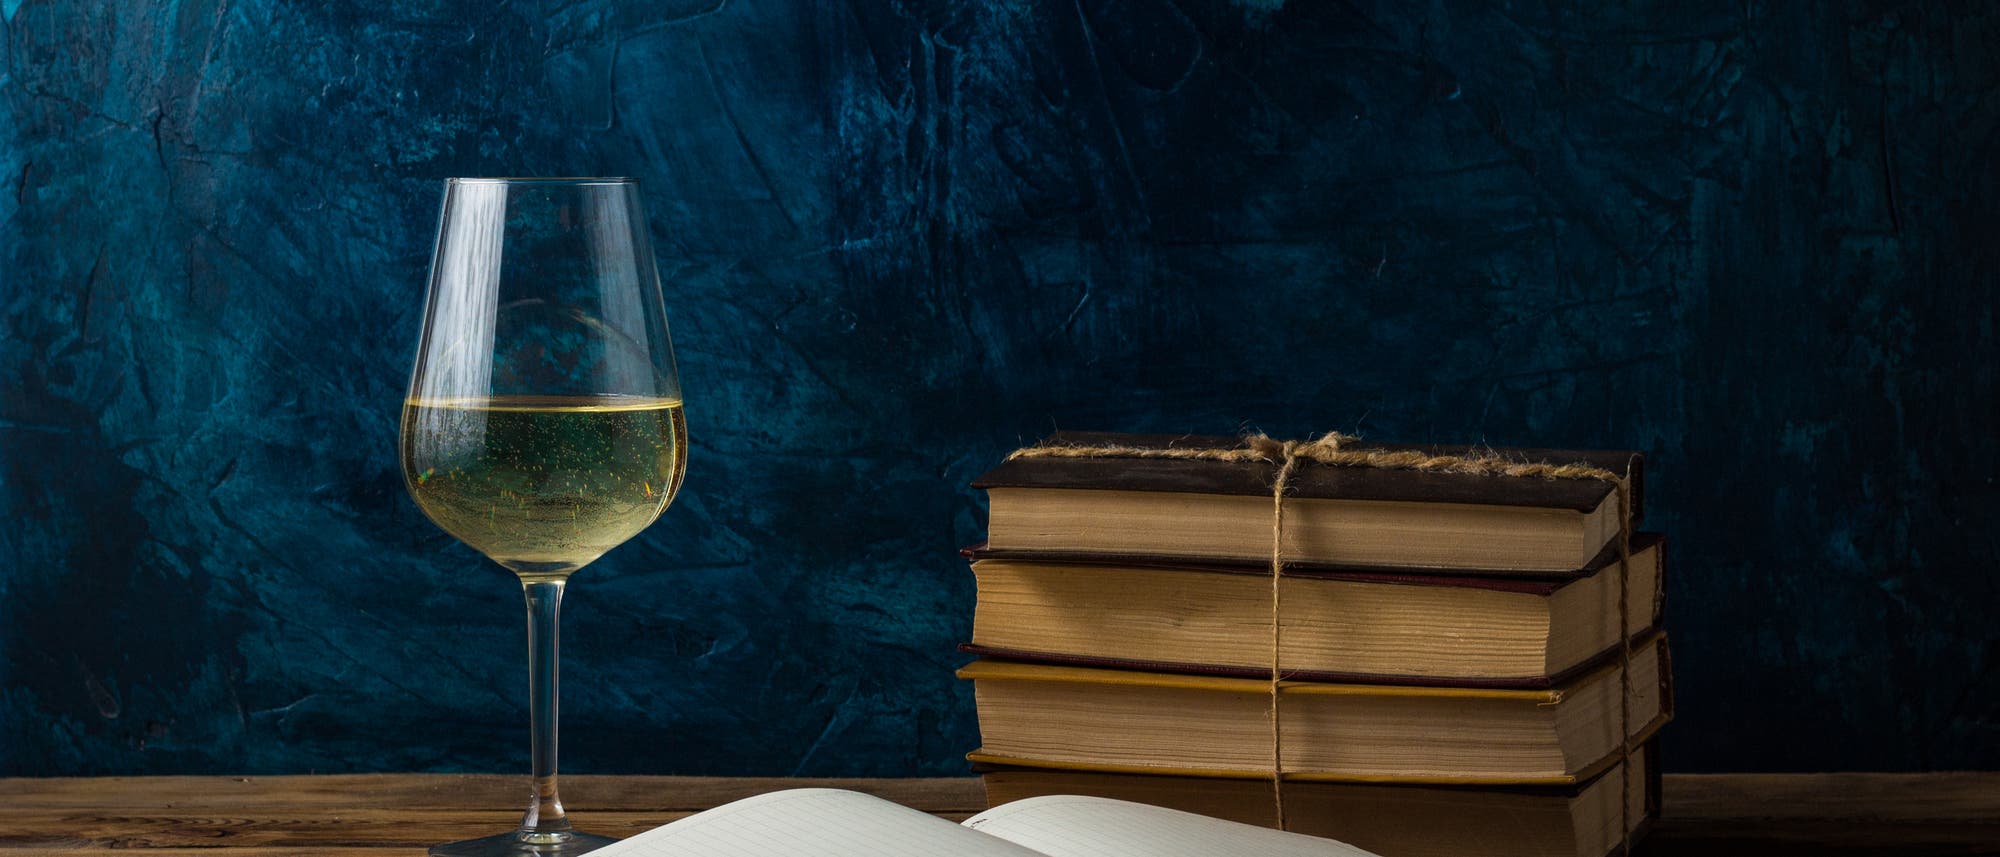 Buch und Wein